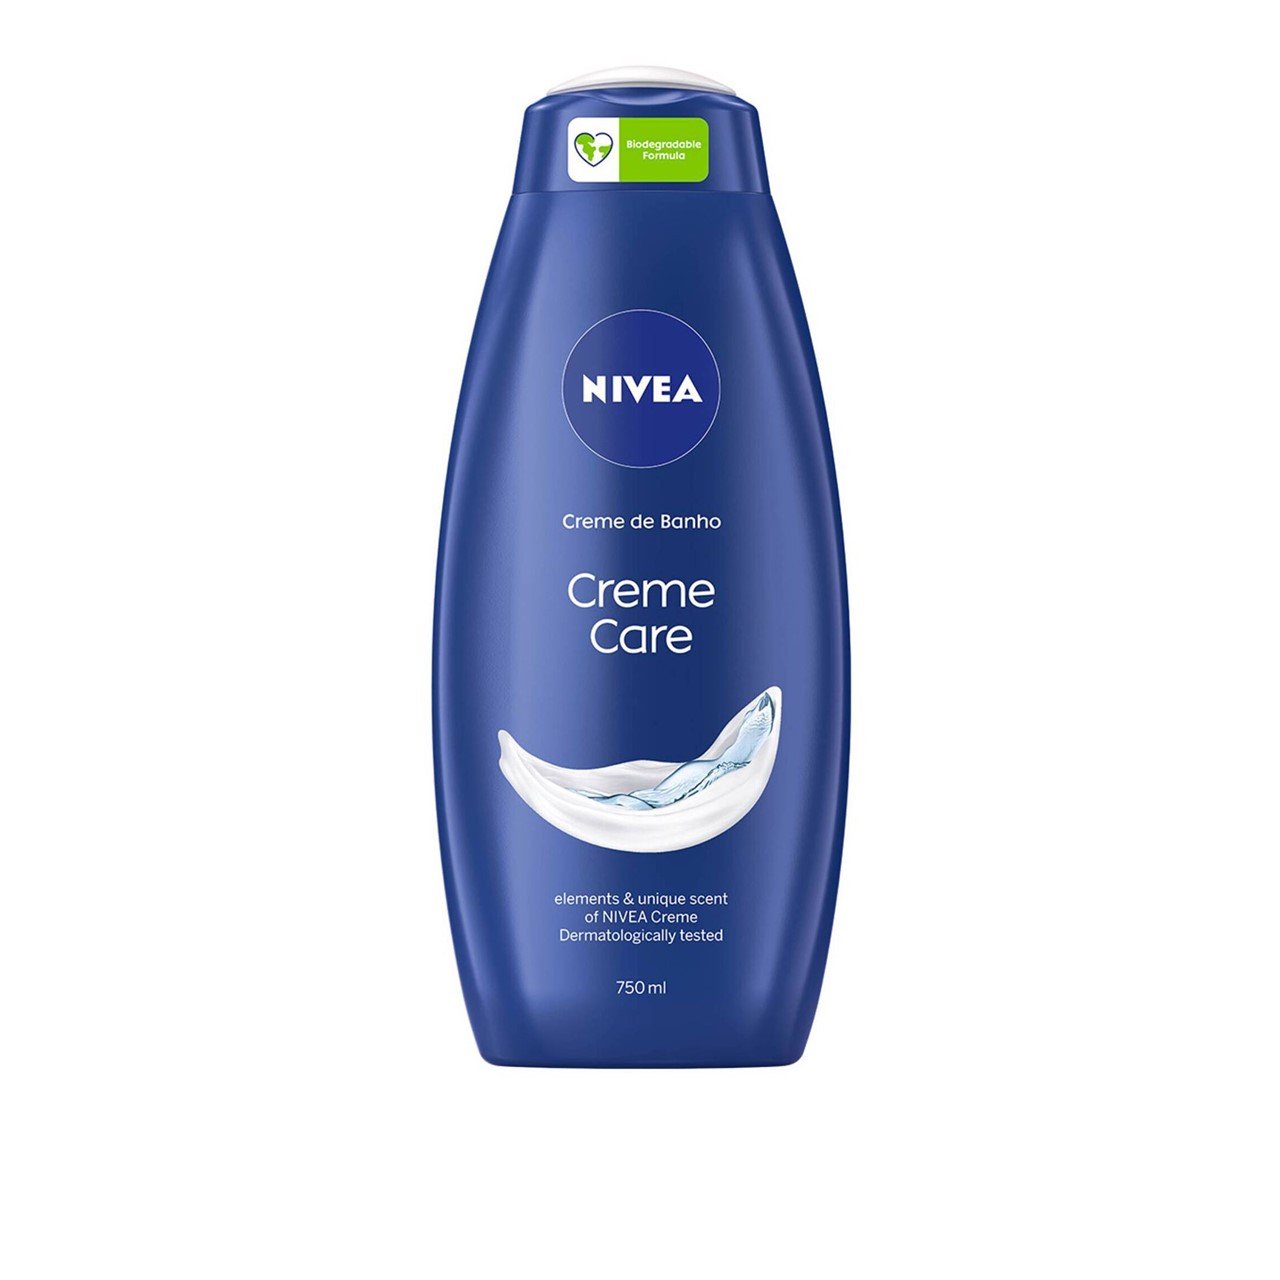 Nivea Creme Care Shower Cream 750ml (25.36fl oz)